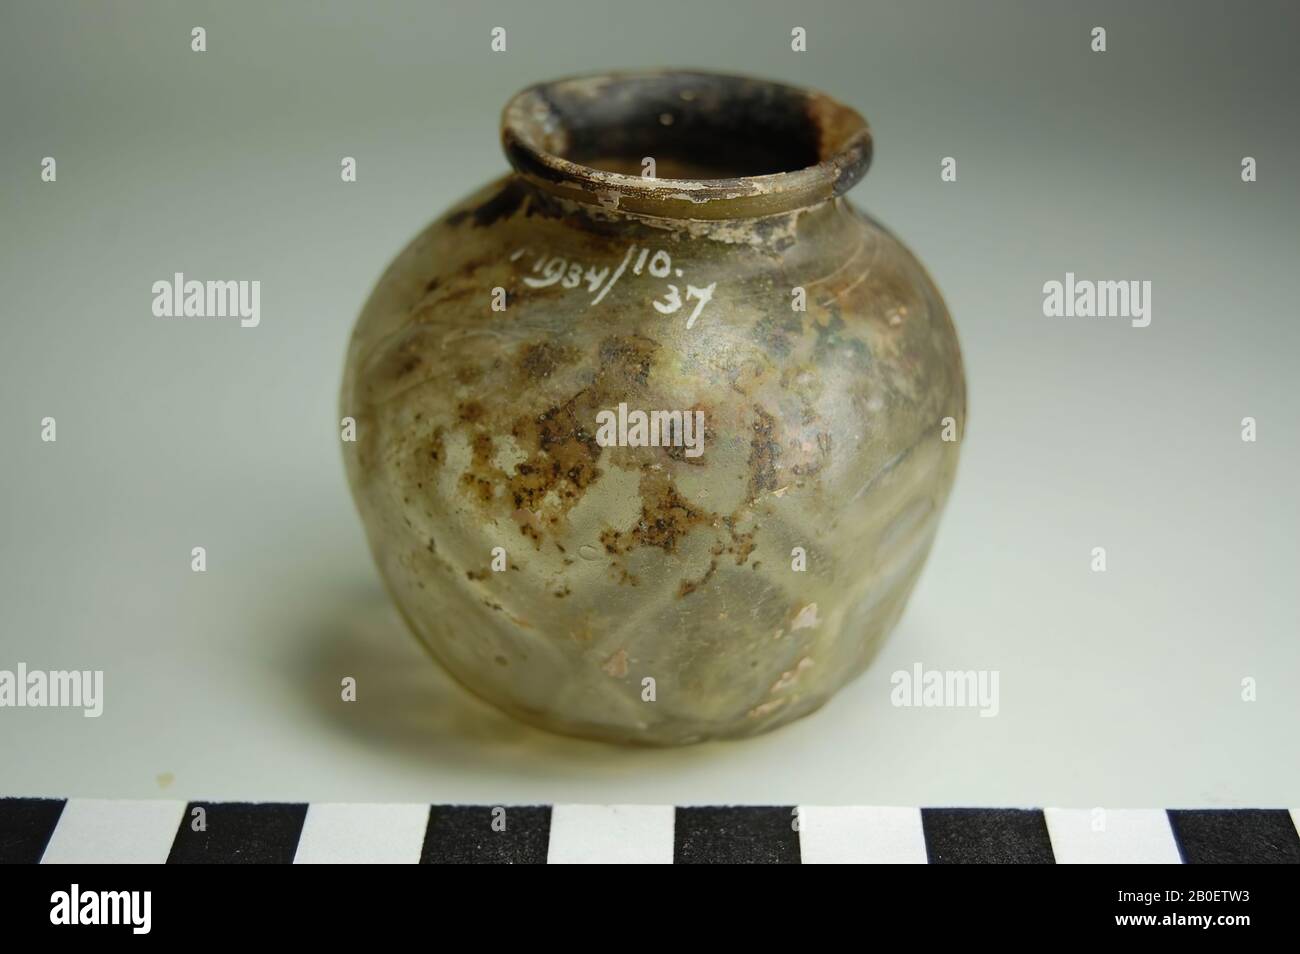 Vaso, Forma soffiato vaso di vetro trasparente decolorato, probabilmente islamico. Il vaso ha un corpo sferico molto irregolare con una decorazione di 14 doppi vetri goffrati intorno ad esso. In basso è stata premuta una stella a cinque punte con un punto centrale. Il vaso ha una bocca larga con un bordo leggermente arrotondato., Pot, vetro, stampo soffiato, h. 5,4 cm, diam. 5,5 cm, Periodo copto 9th-10th Secolo, Egitto Foto Stock